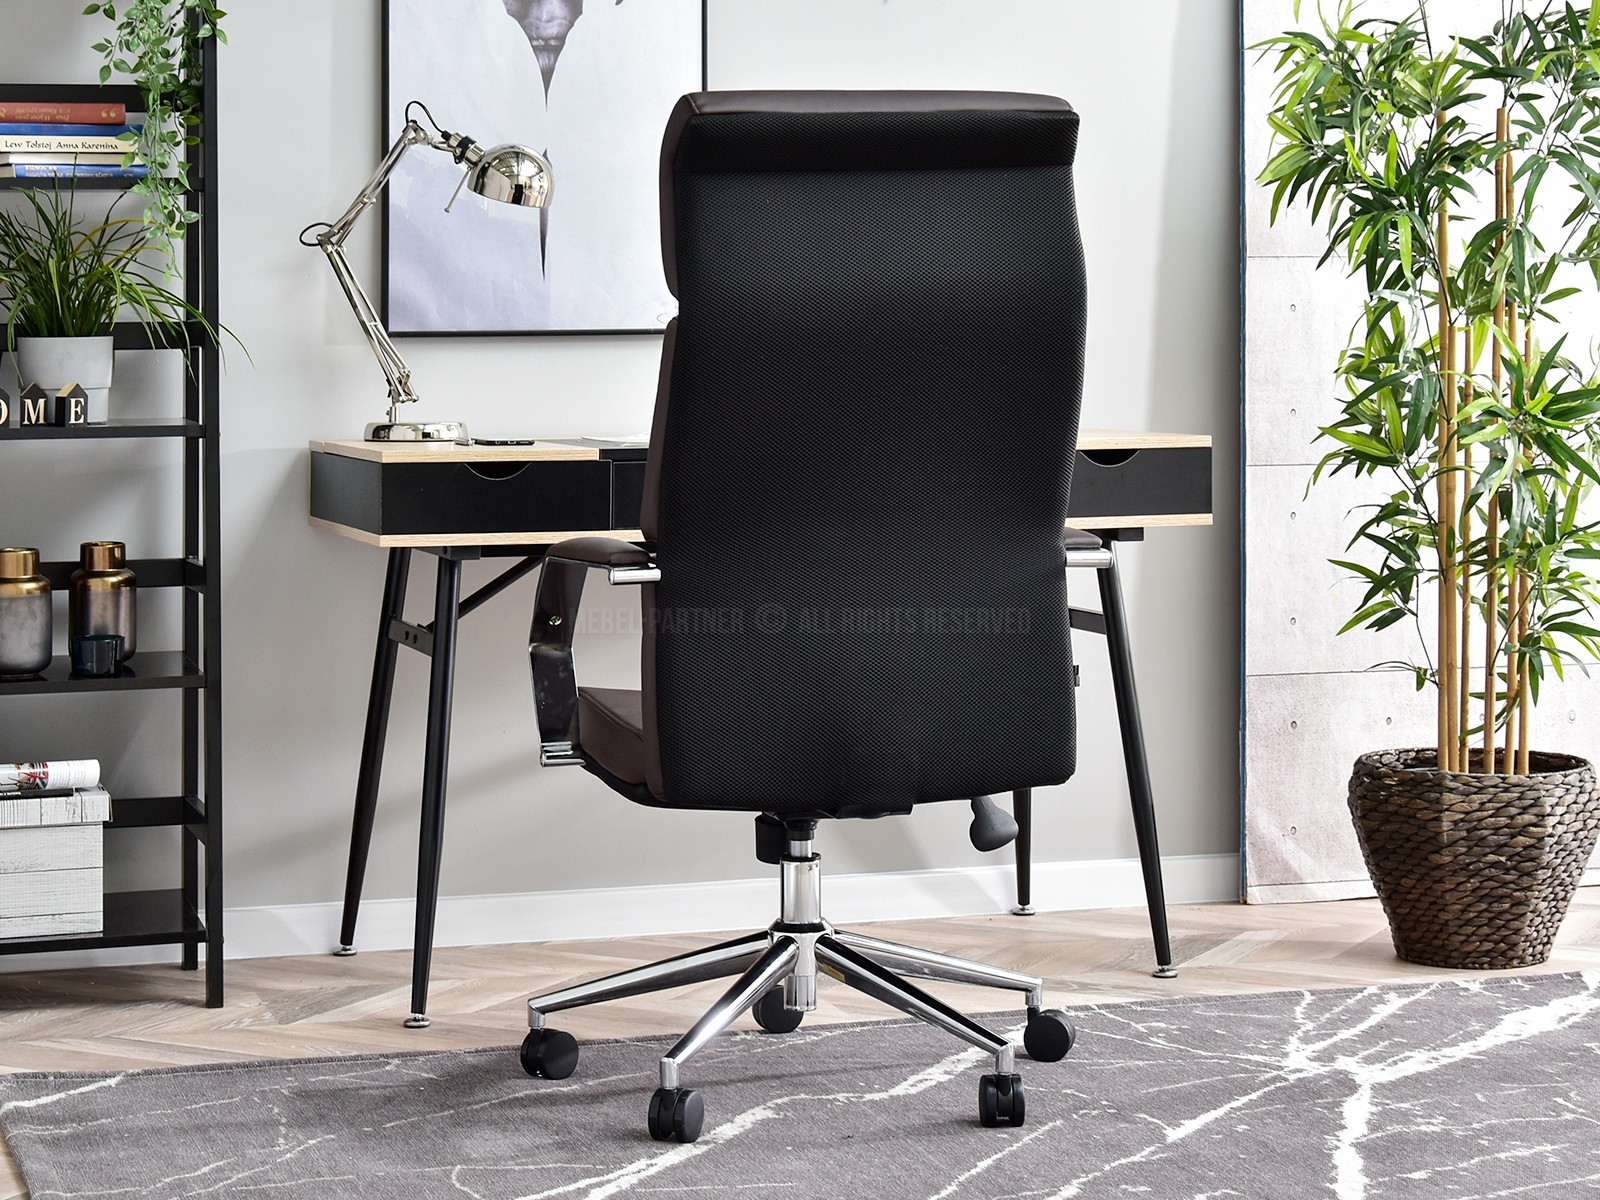 Fotel biurowy BOND BRĄZOWY ze skóry z ergonomicznym oparciem - mobilna podstawa